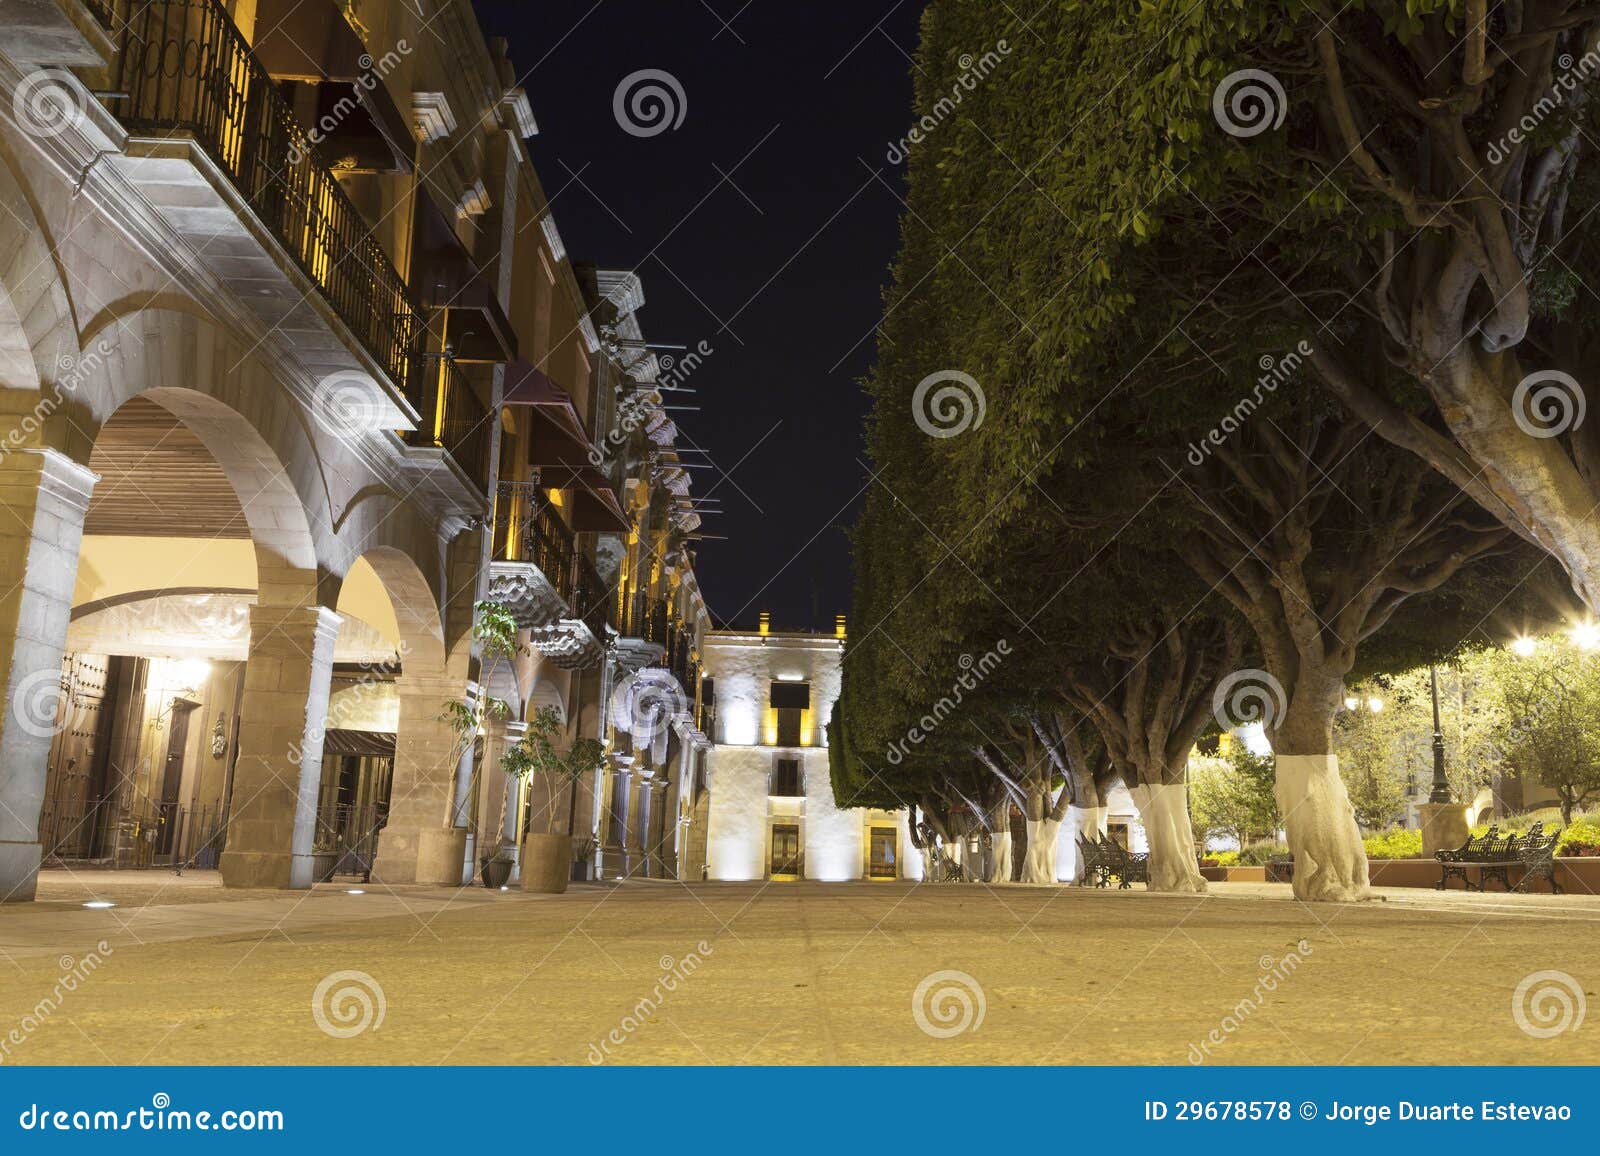 queretaro main square at night